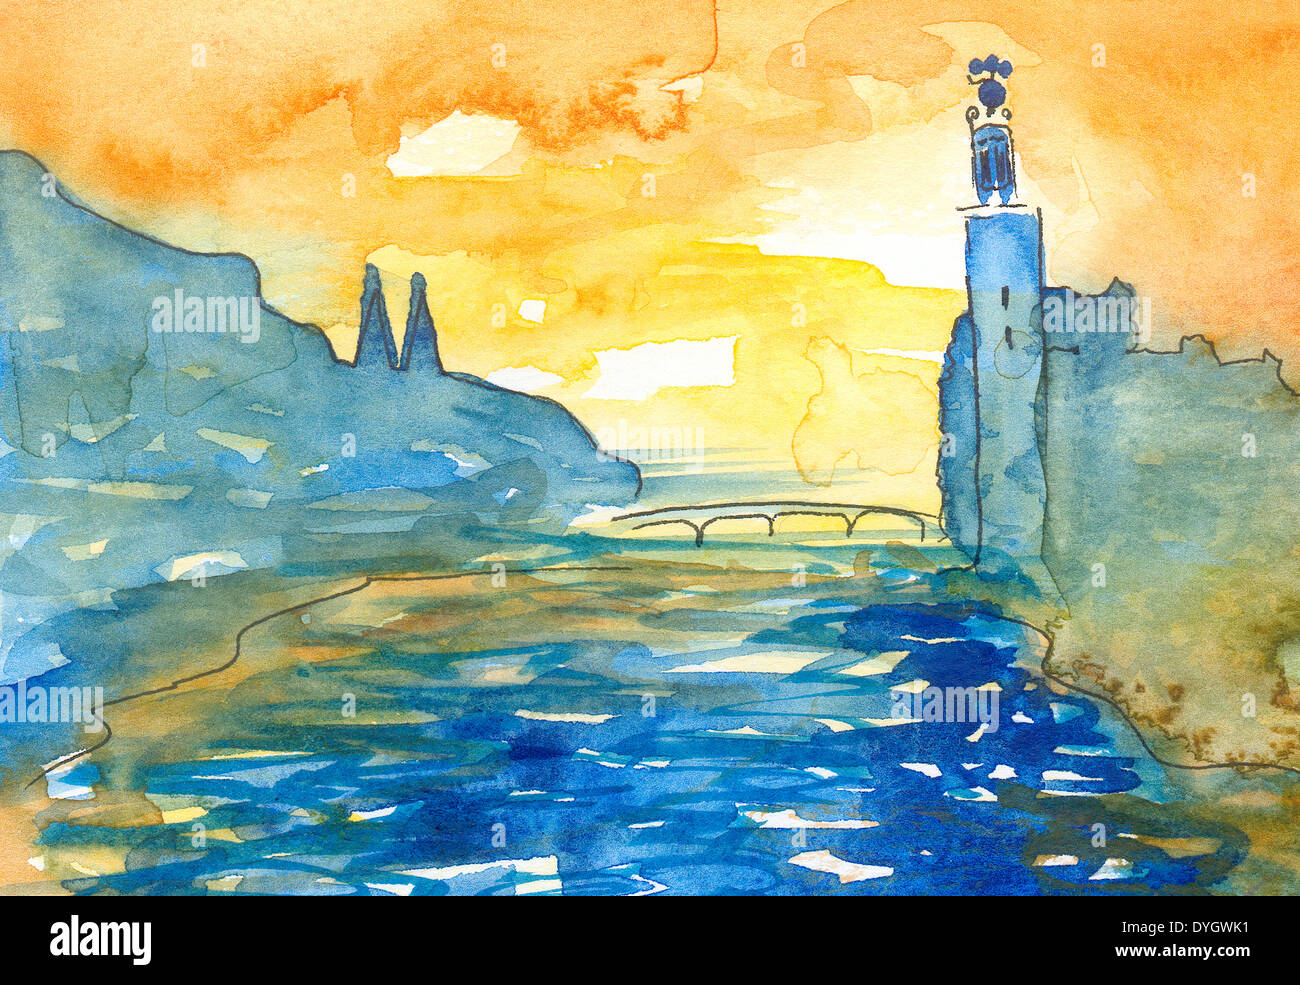 Aquarellmalerei im naivistic Stil der Stockholm Wasser-Brücke und das Rathaus in Nationalfarben, blau und gelb. Stockfoto